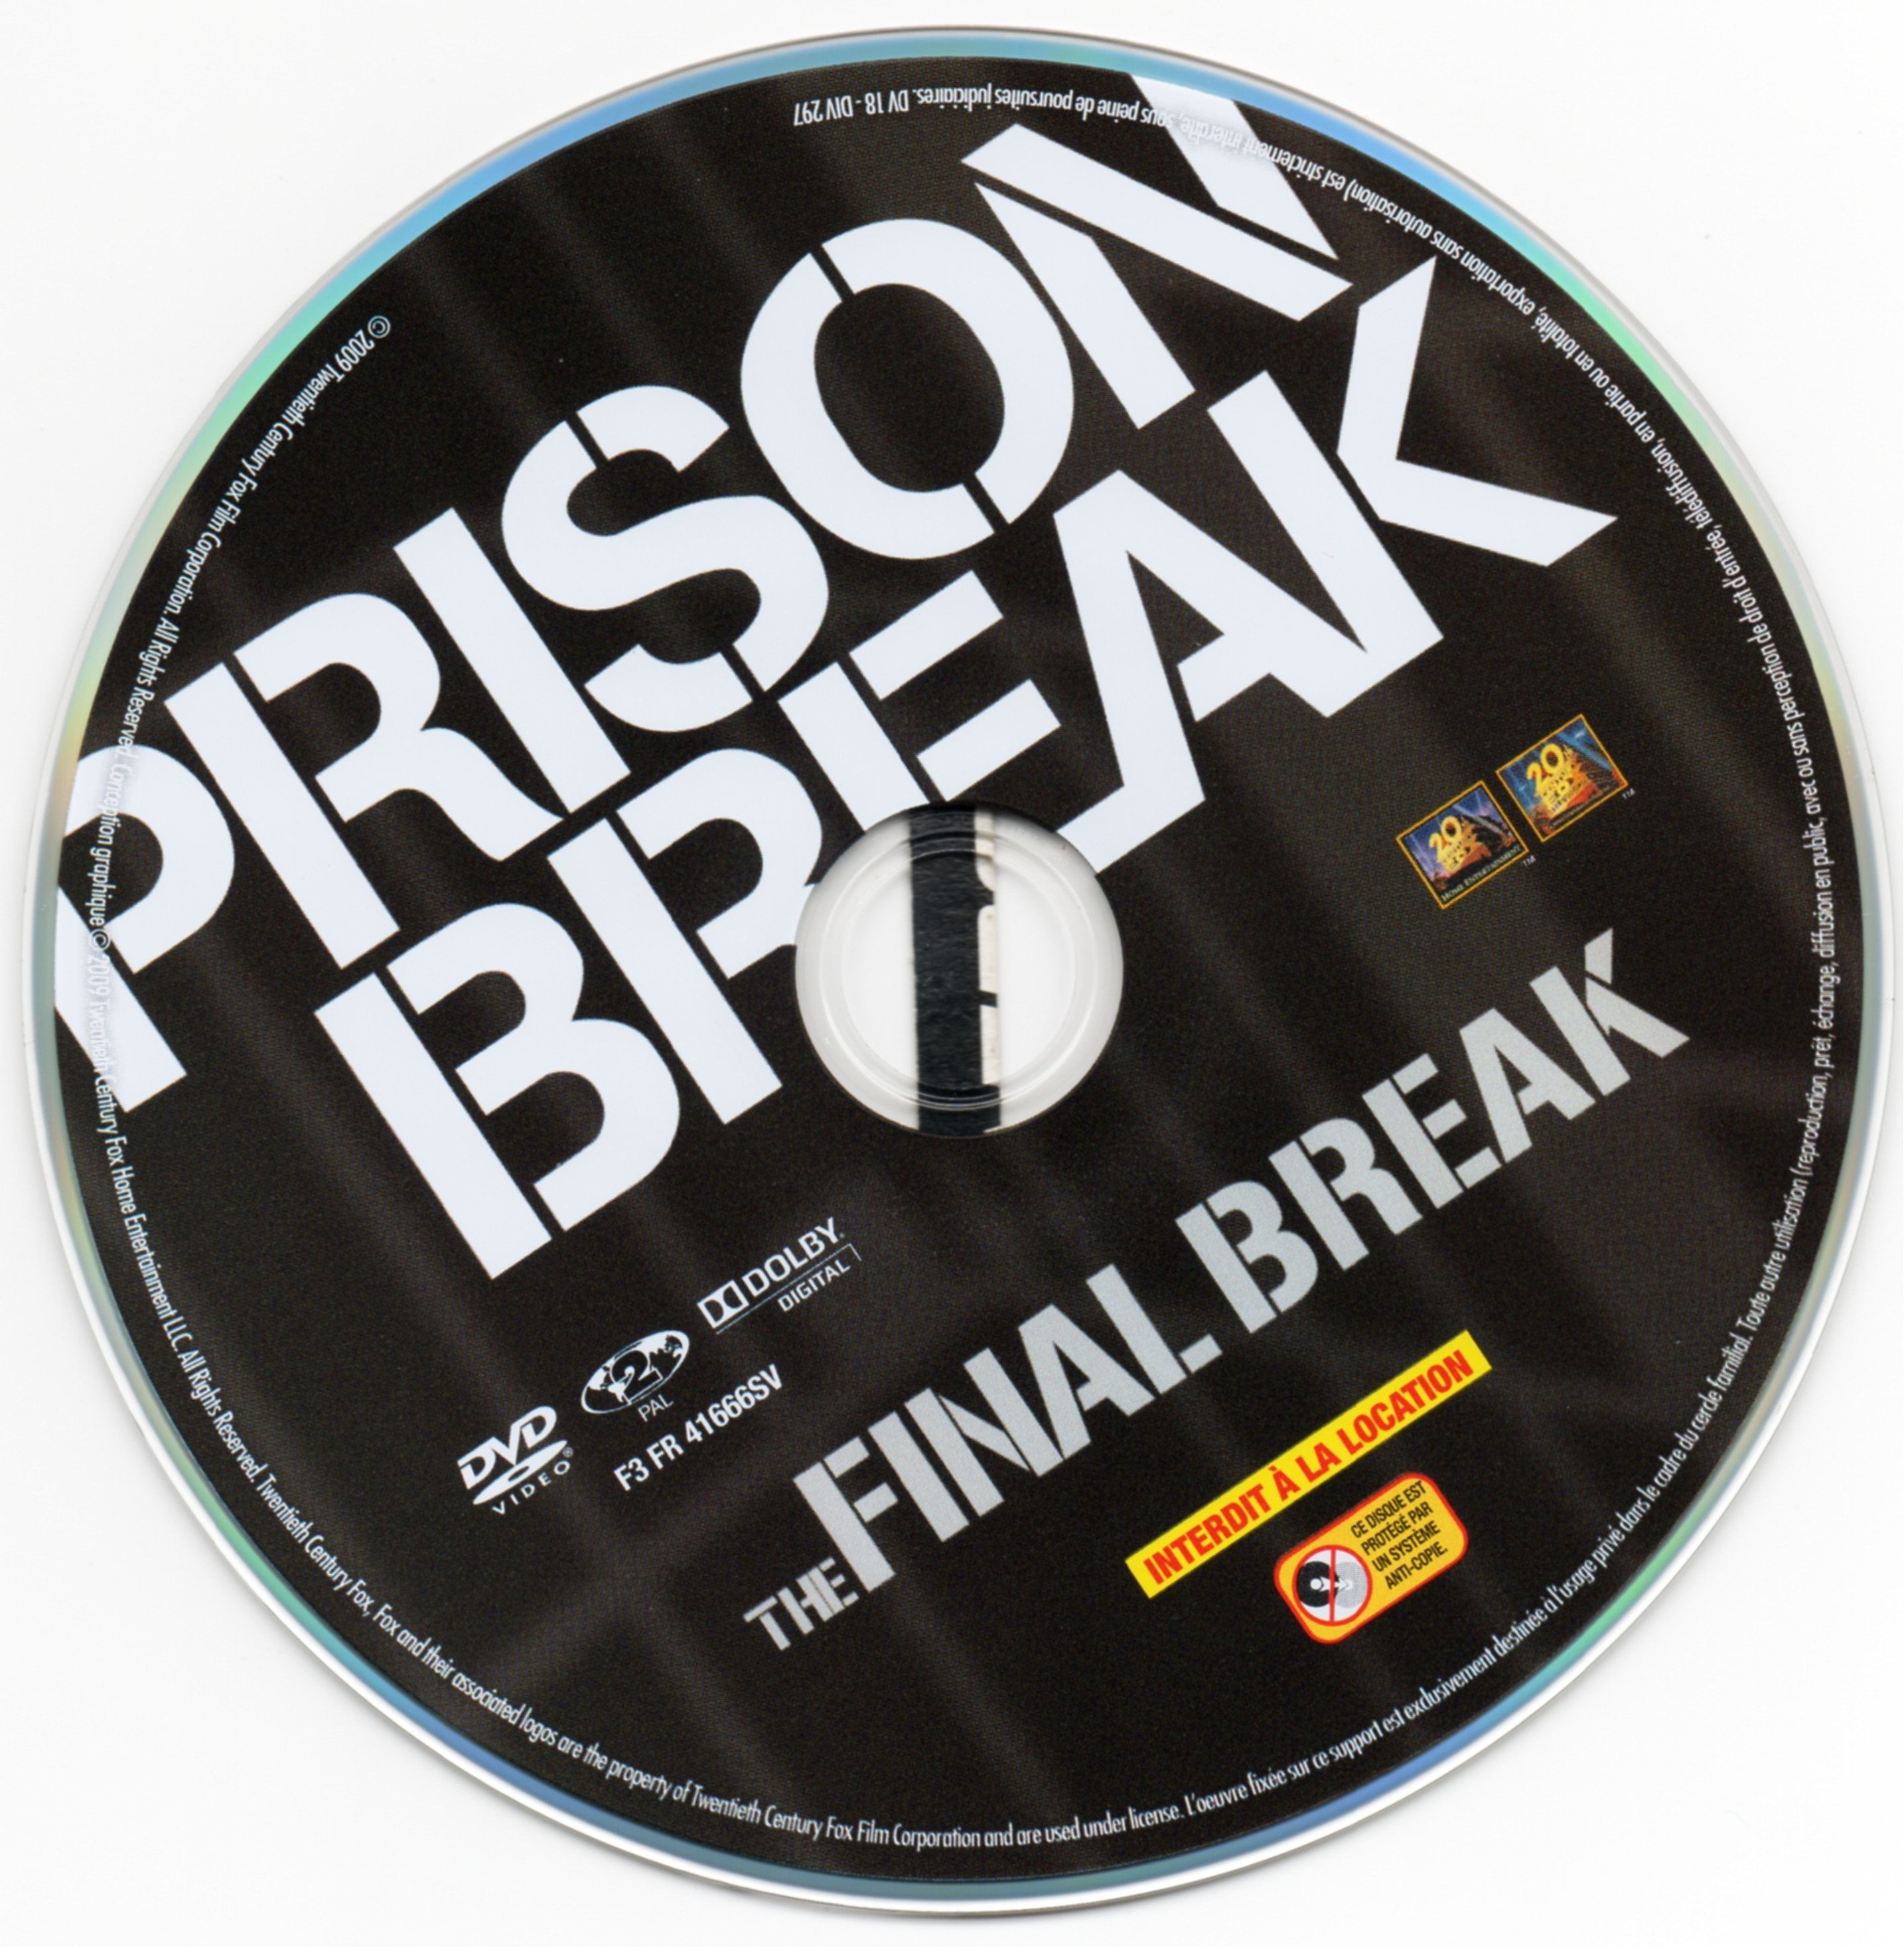 Prison break - The final break